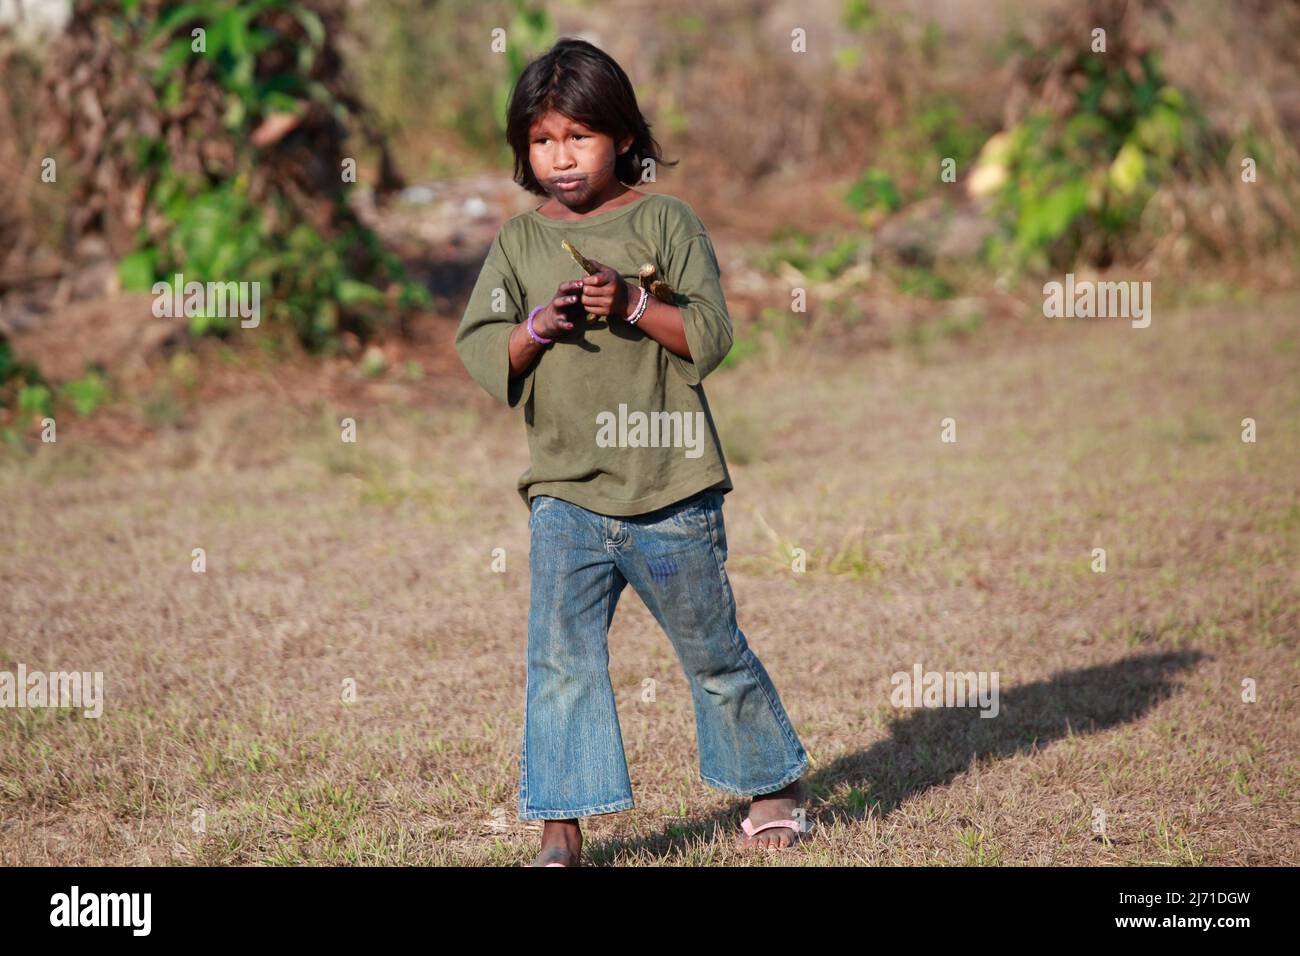 Fille indienne portant un Jean et un t-shirt. Indien moderne. Baixo Amazonas, Etat de Pará, Brésil, 2010. Banque D'Images